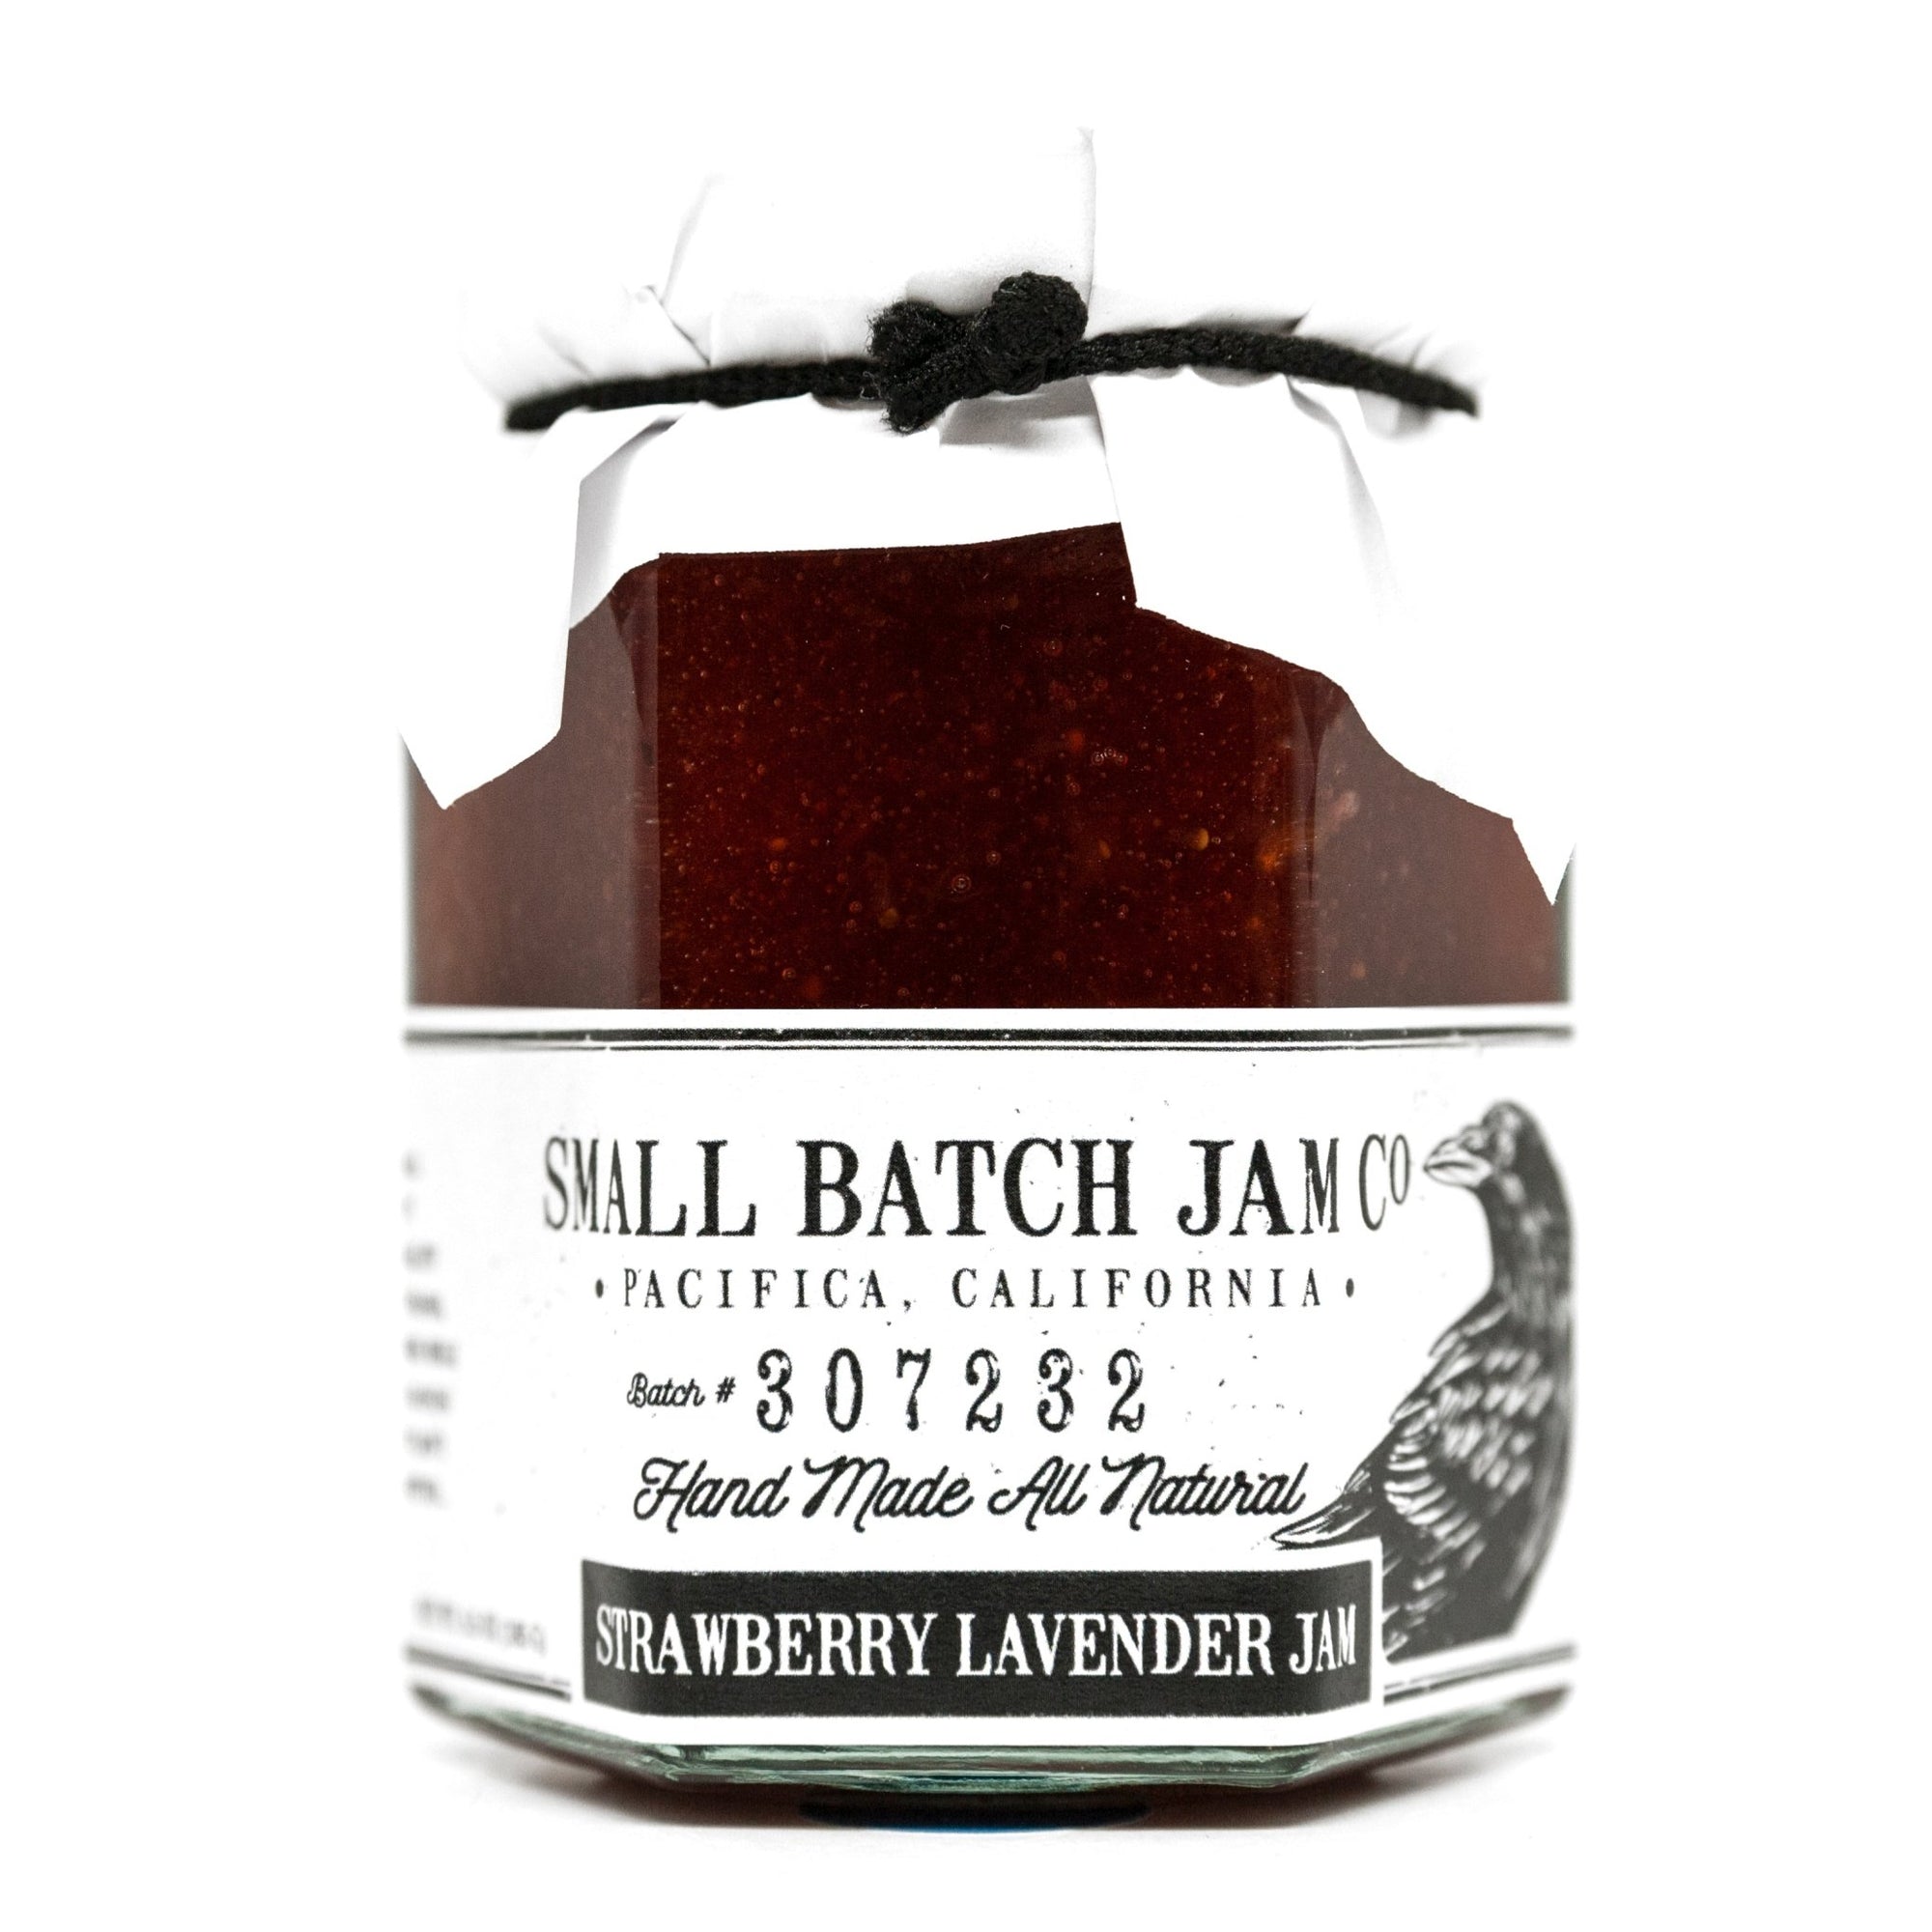 Strawberry Lavender Jam - Small Batch Jam Co